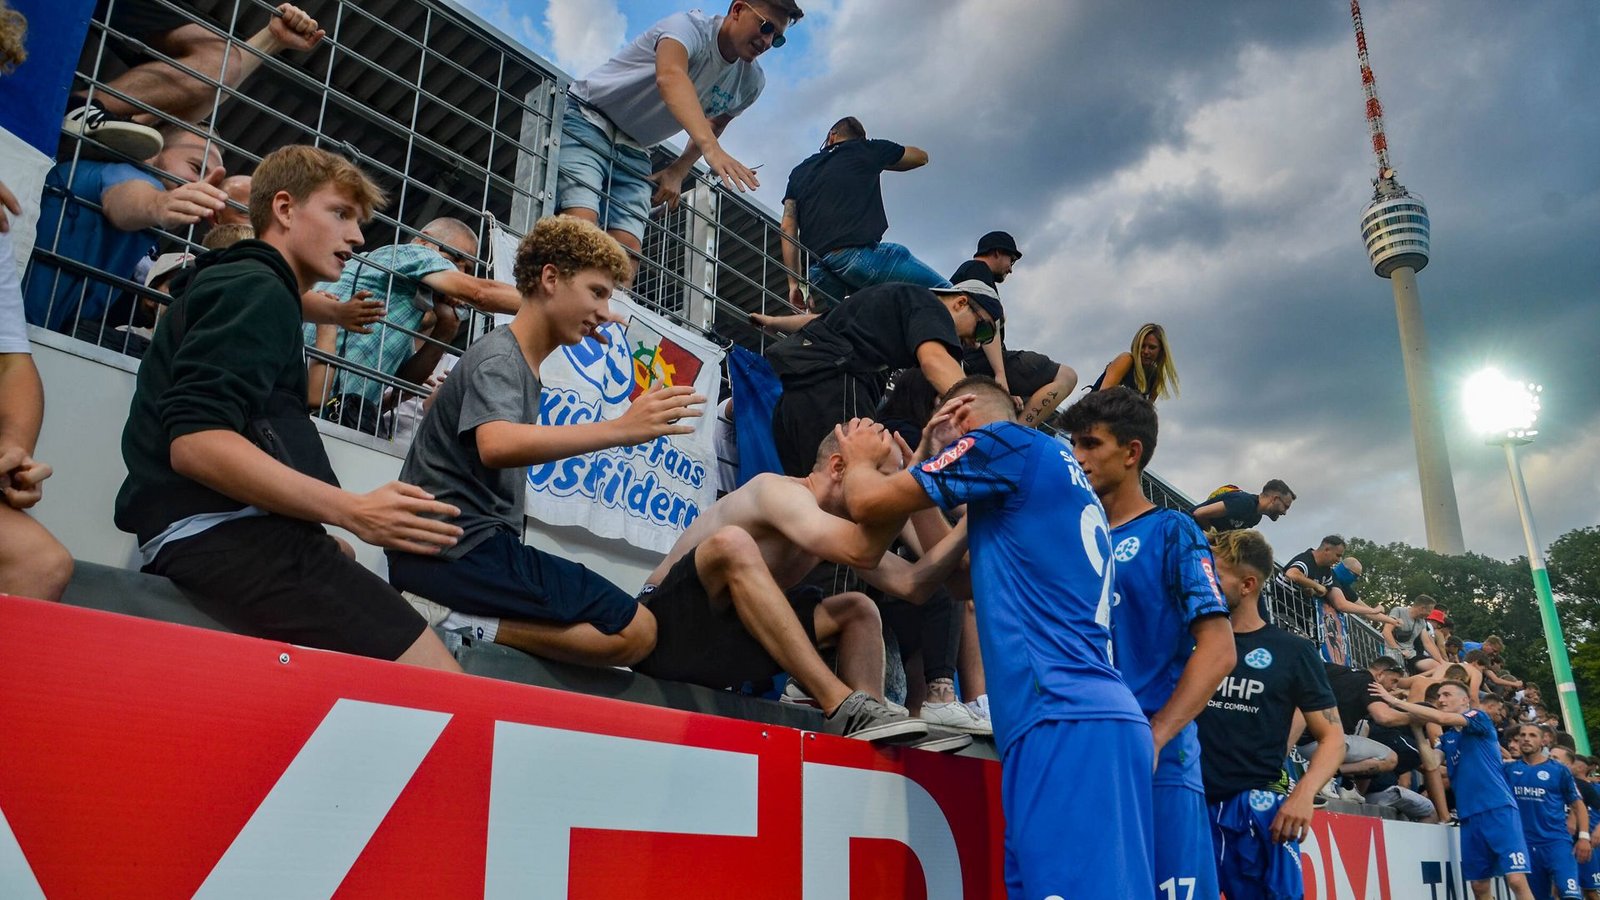 Der Zusammenhalt zwischen Fans und Team ist groß.Foto: IMAGO/Lobeca/IMAGO/Max Krause